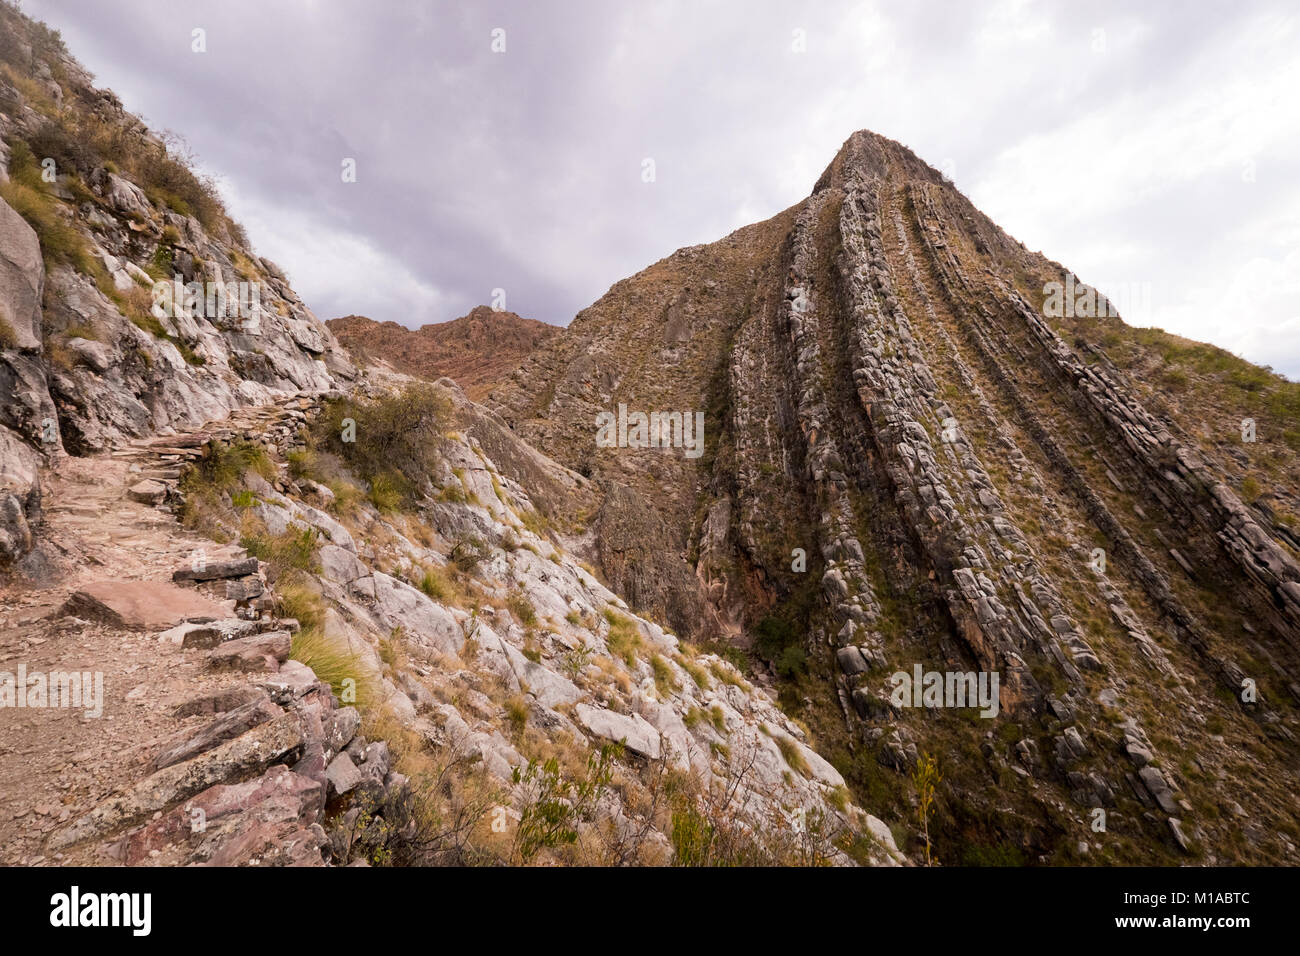 Interesante geología en el Parque Nacional Toro Toro, cerca de la ciudad de Cochabamba, Bolivia. Esto es a lo largo de la caminata a los fósiles marinos. Foto de stock